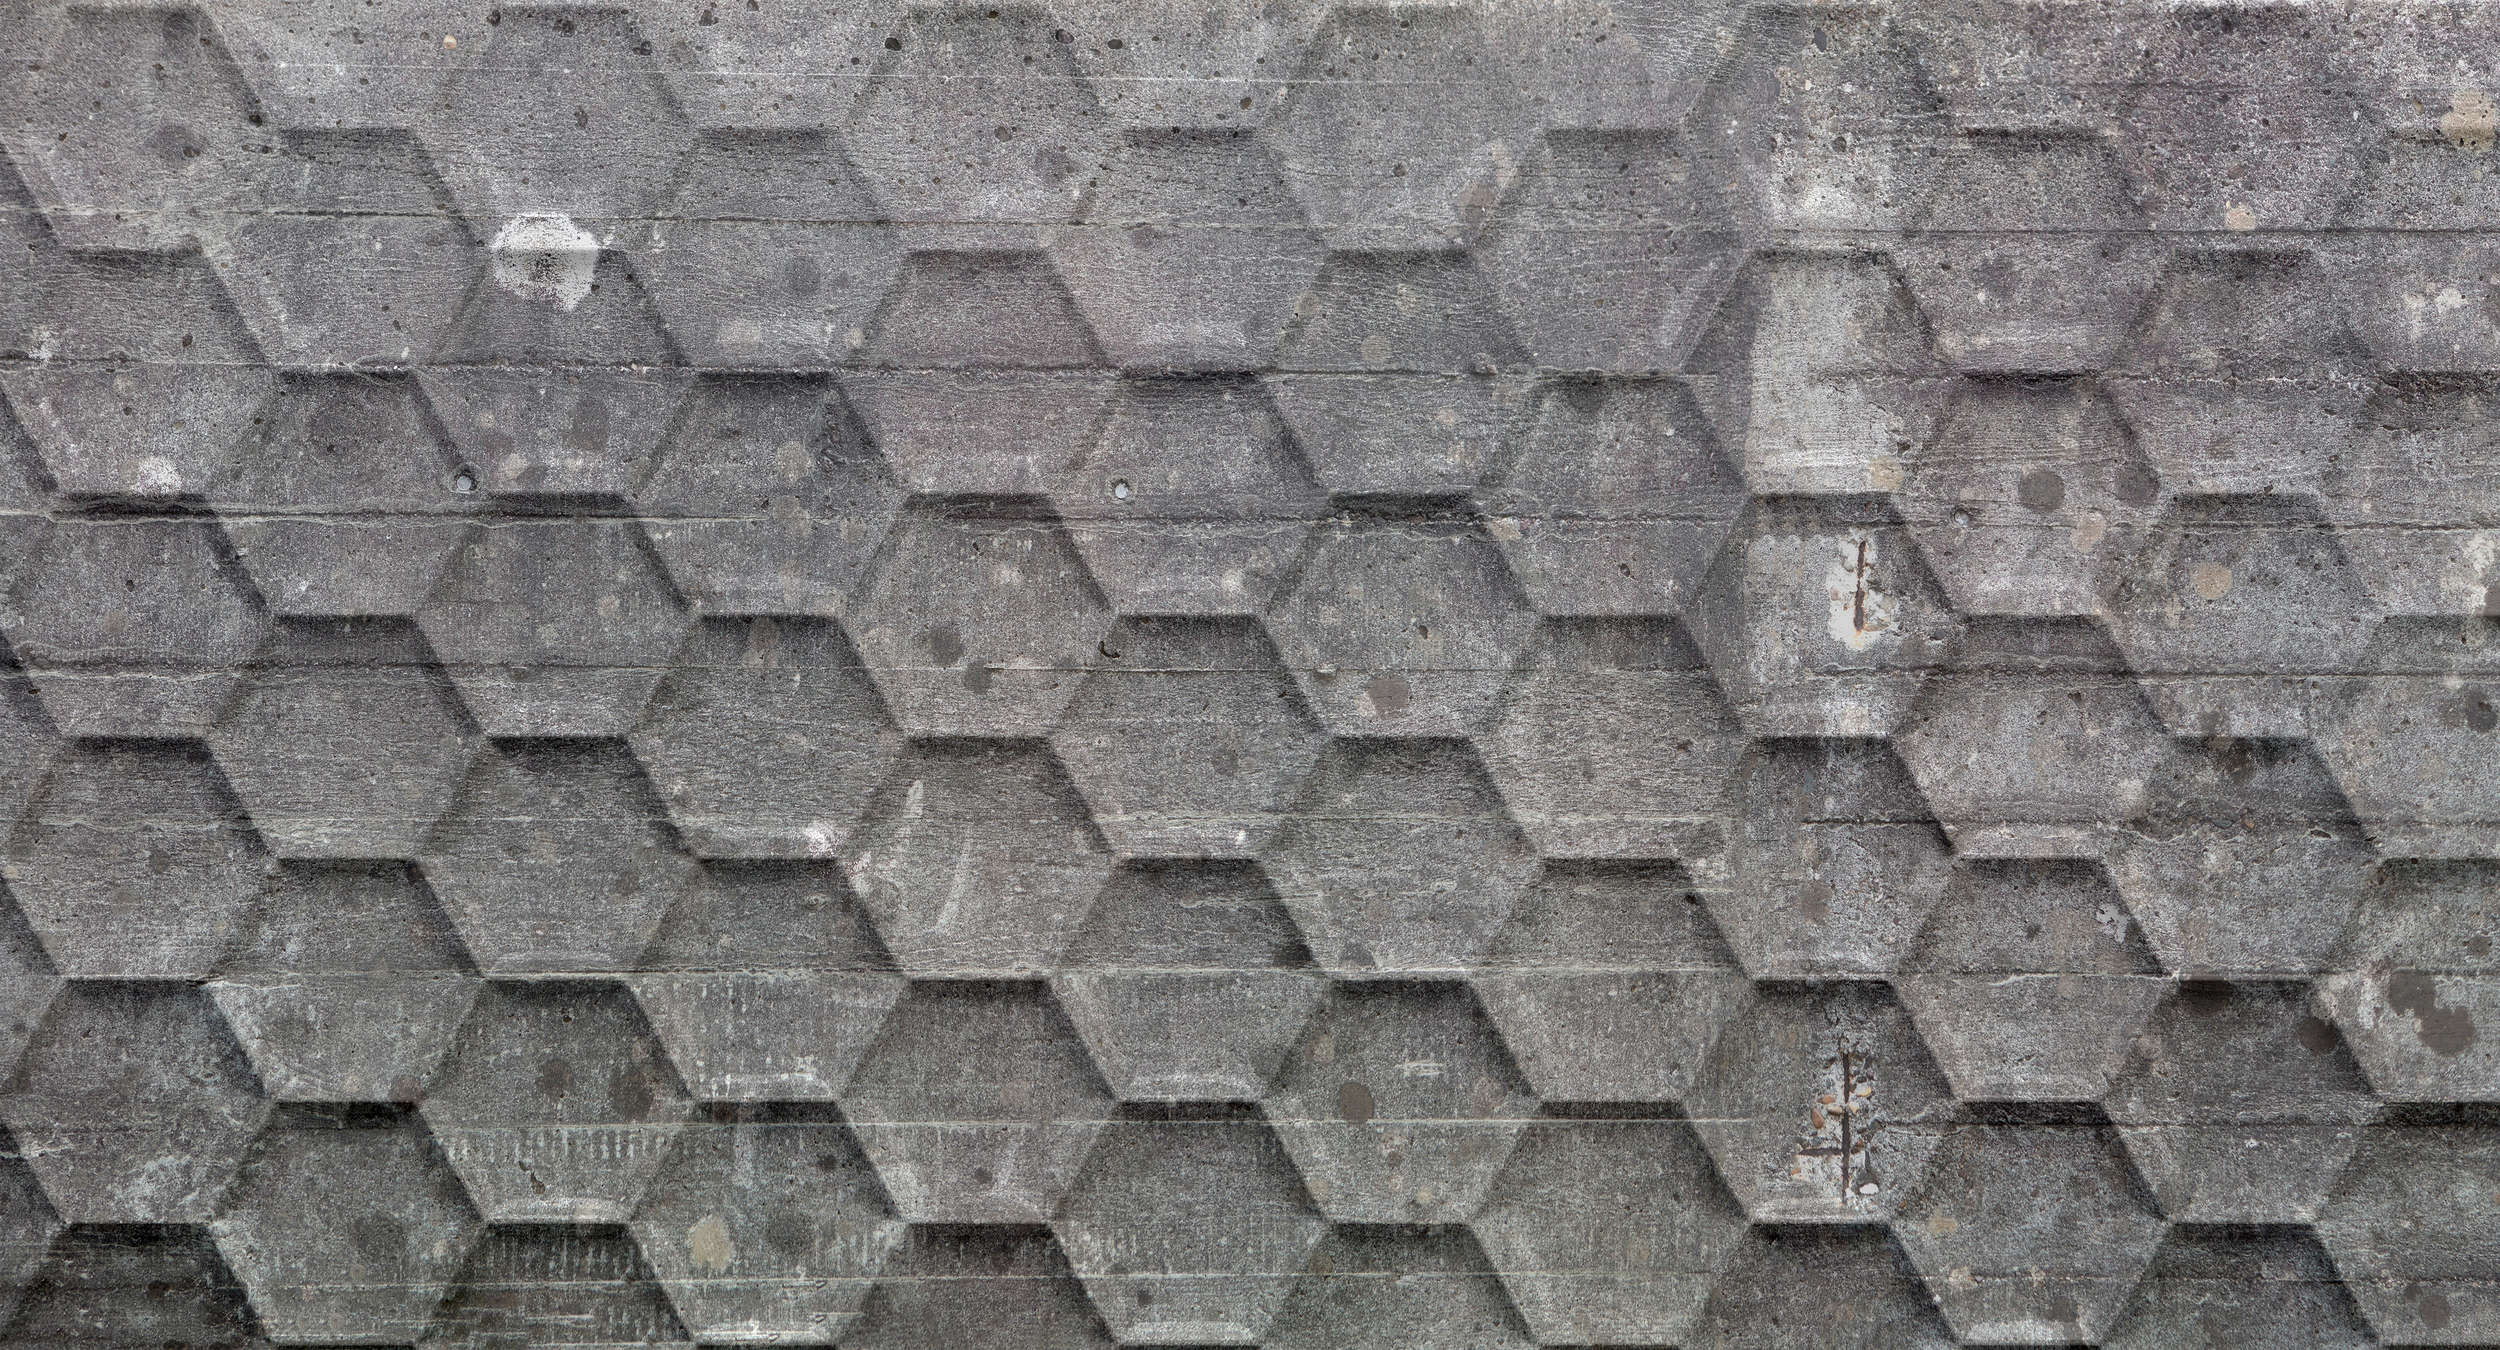             Fotomurali rustico in cemento con motivo a nido d'ape - grigio, bianco
        